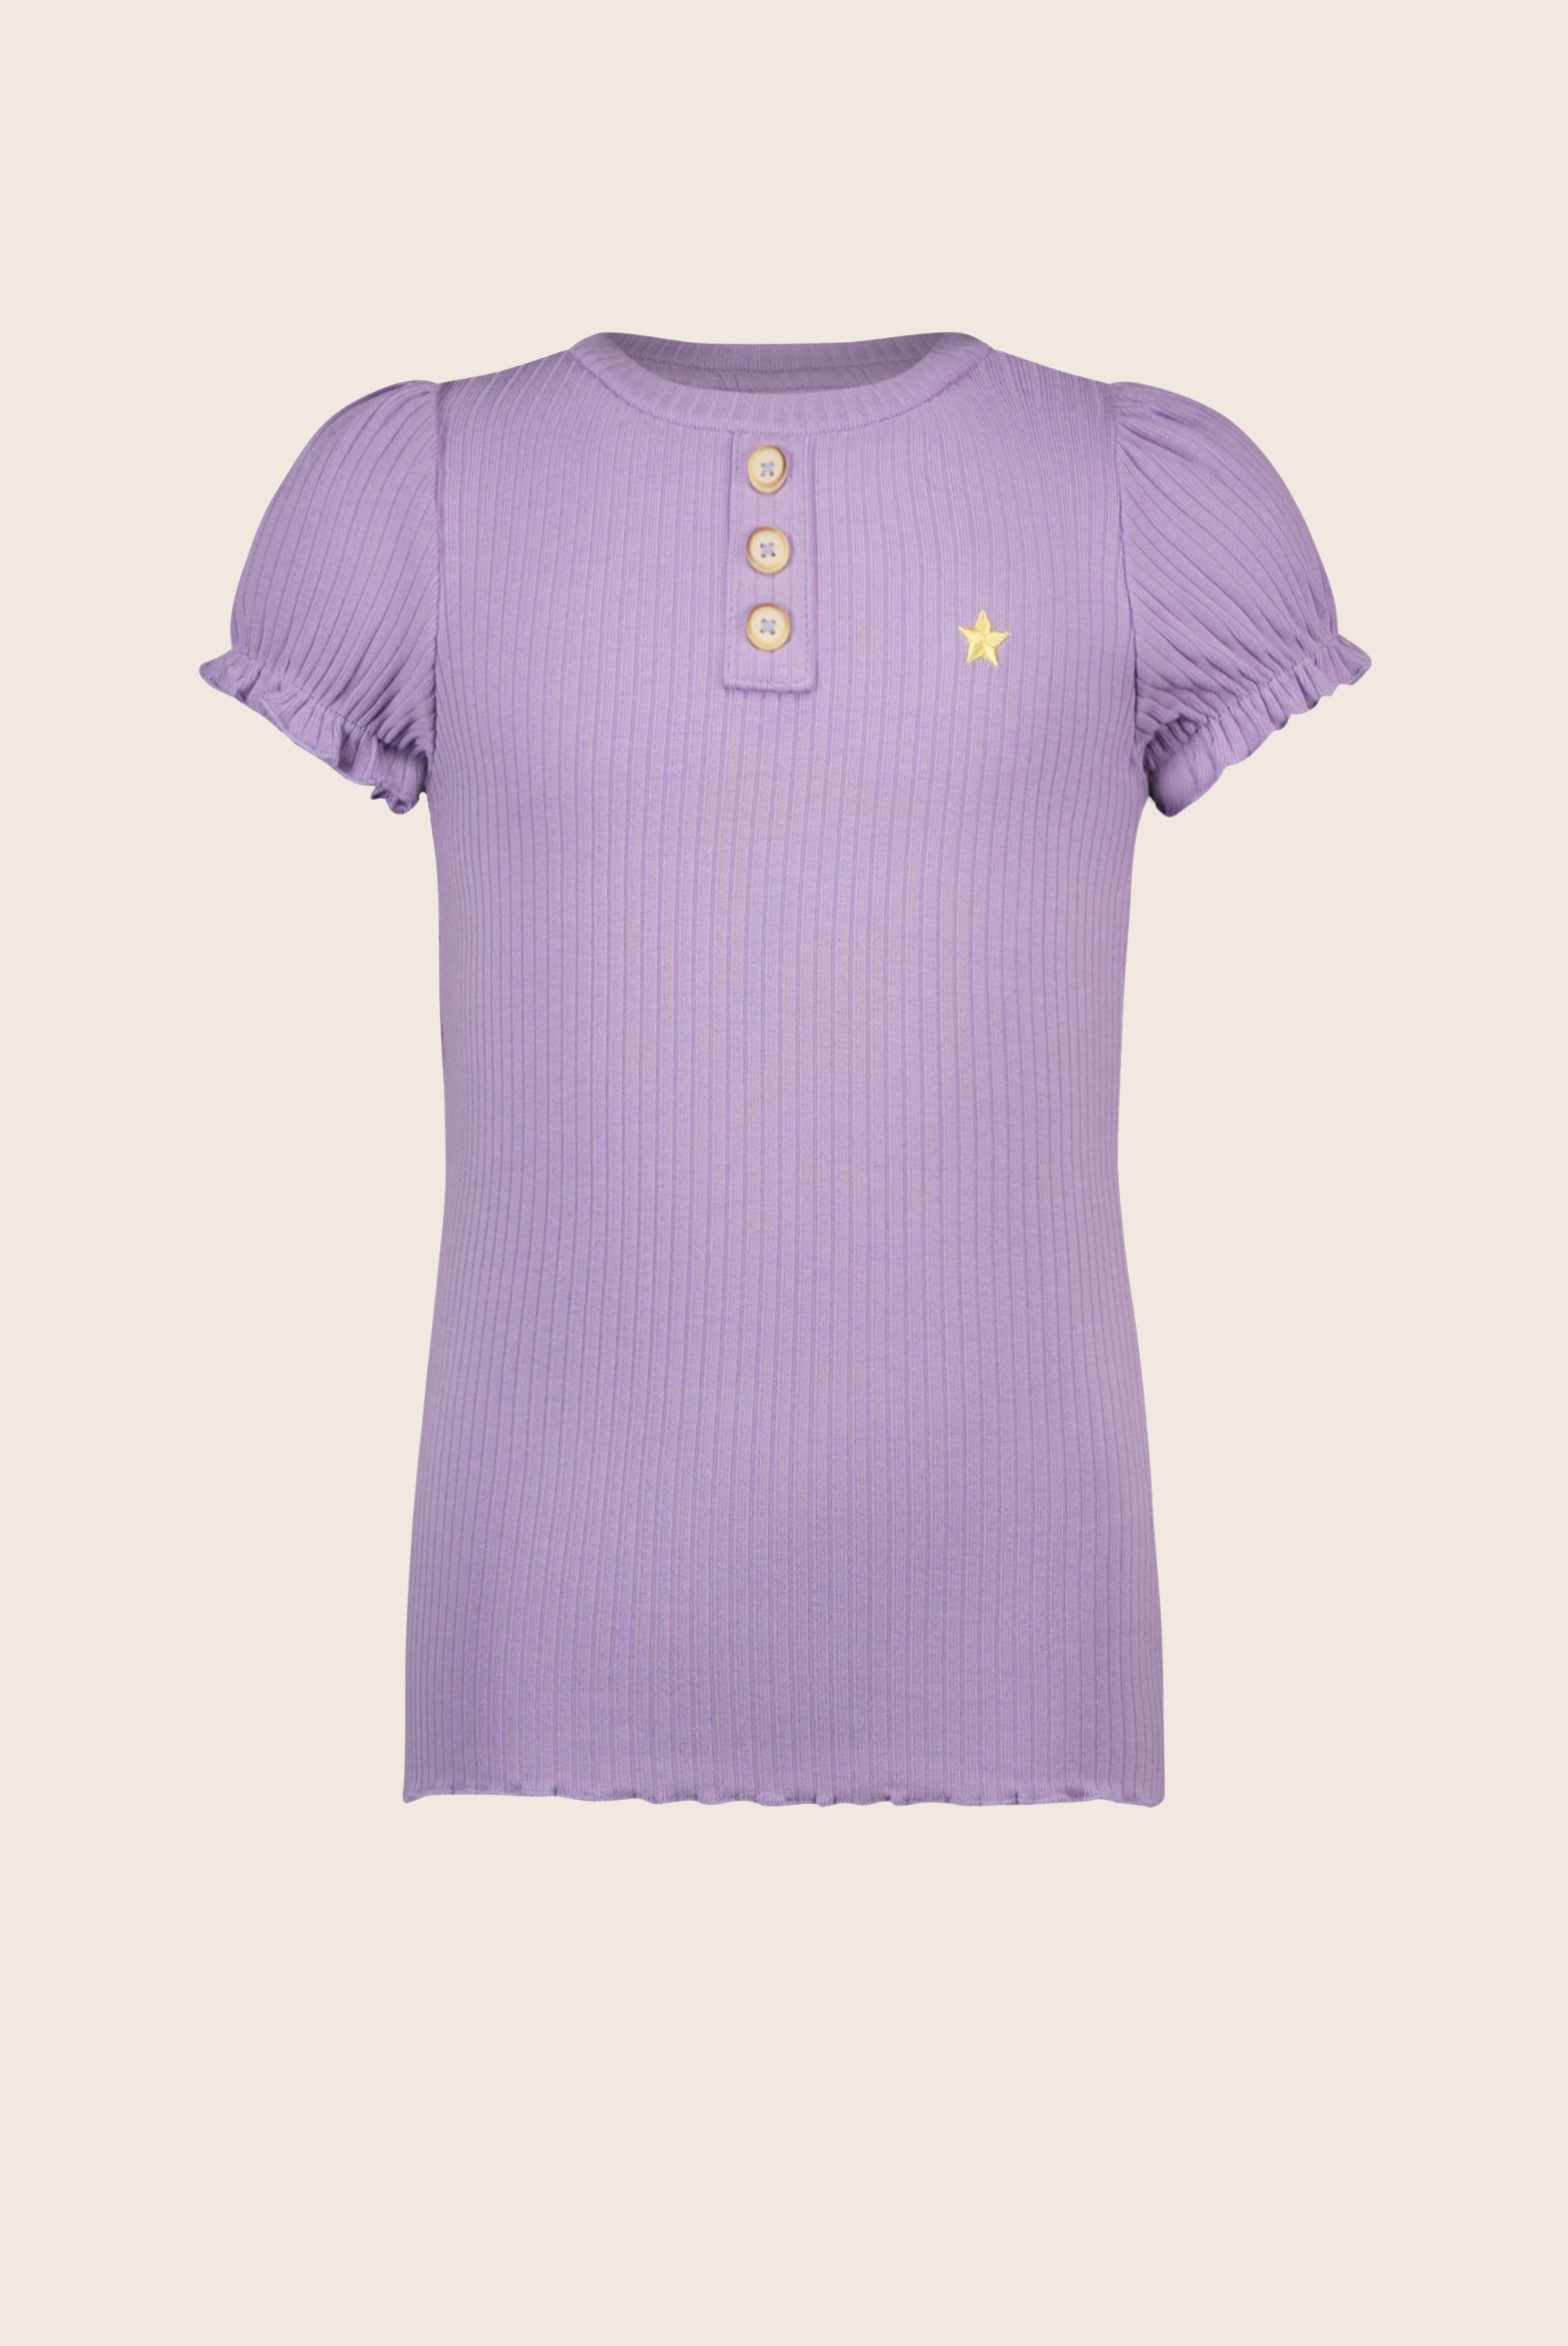 T-Shirt Flo girls solid rib tee Lilac